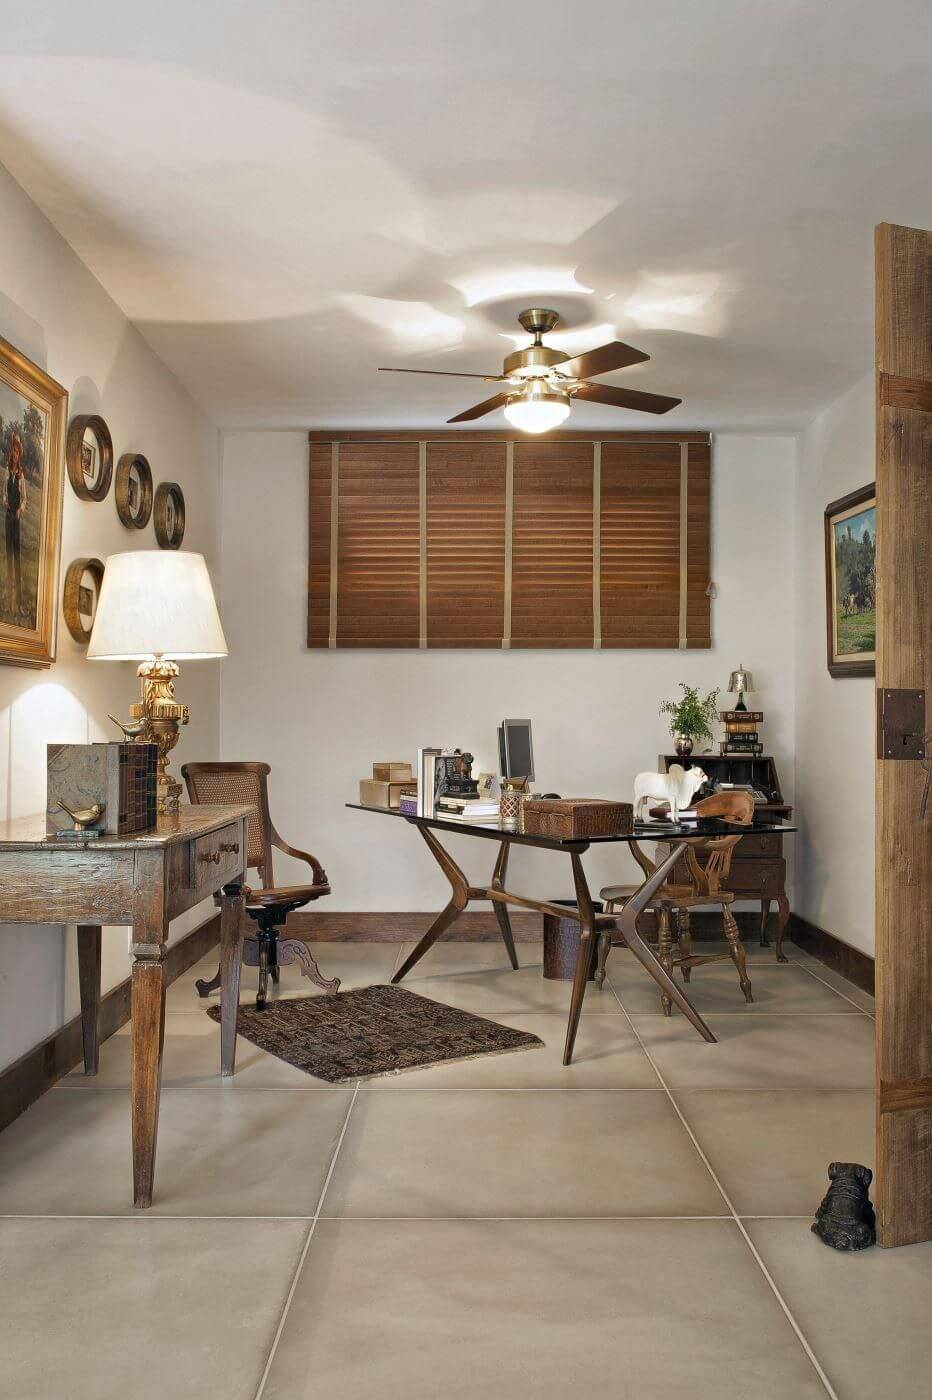 Home office com persiana de madeira e ventilador de teto. Fonte: Gislene Lopes